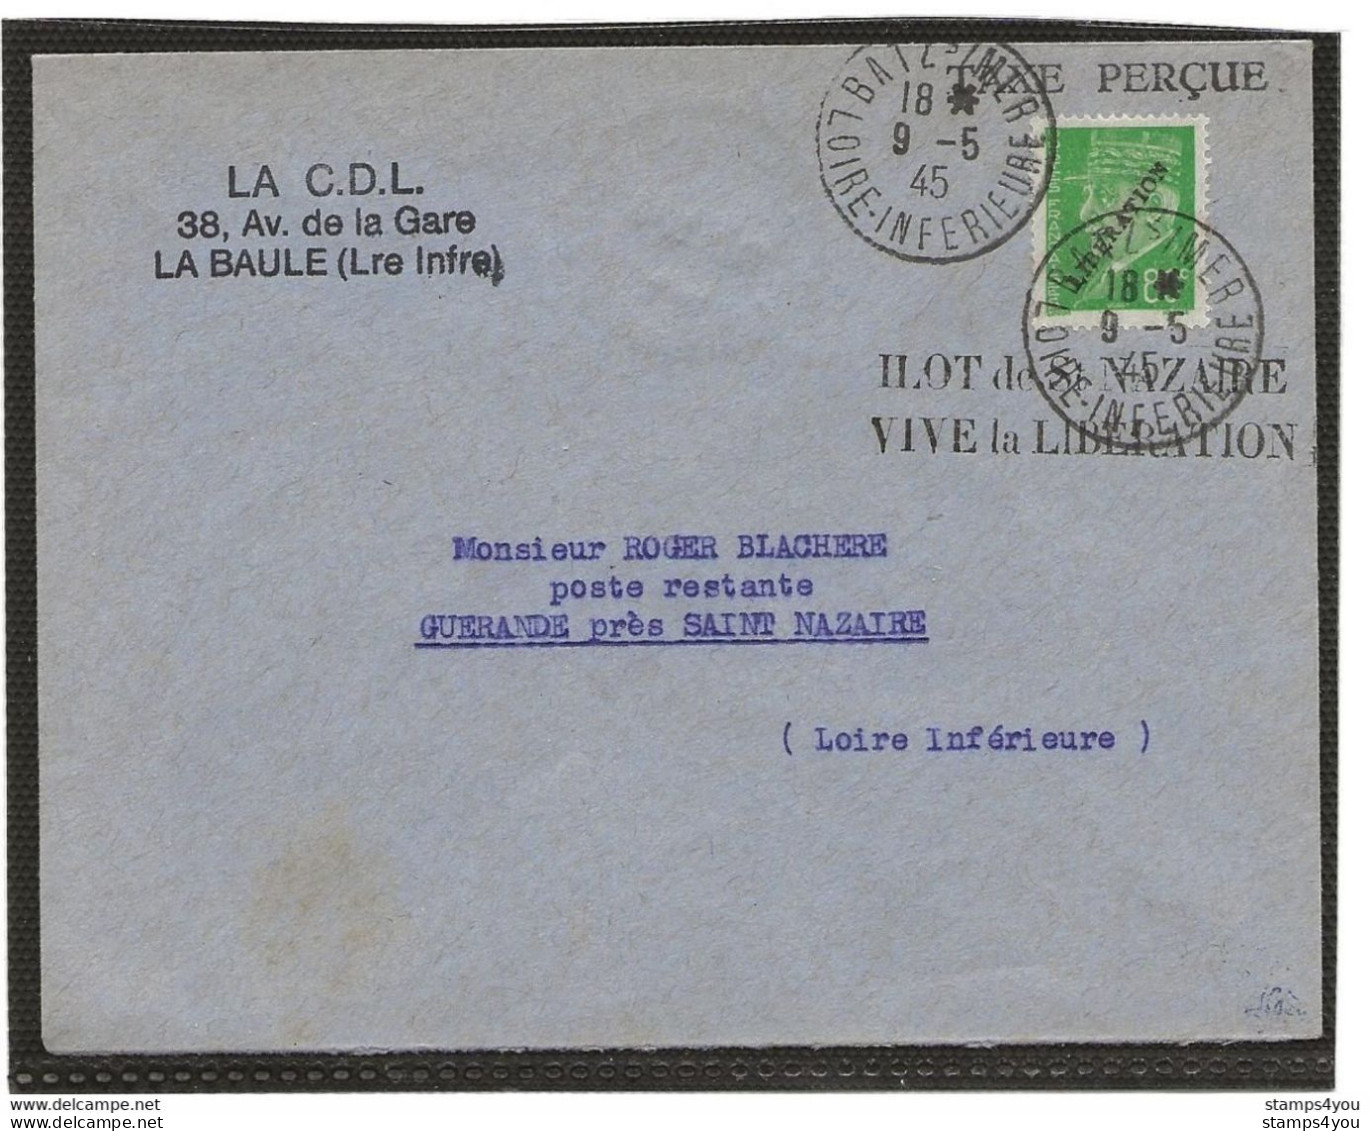 150 - 76 - Superbe Enveloppe Avec Timbre Libération - Ilot De St Nazaire Vive La Libération 19.5.1945 - Guerre Mondiale (Seconde)